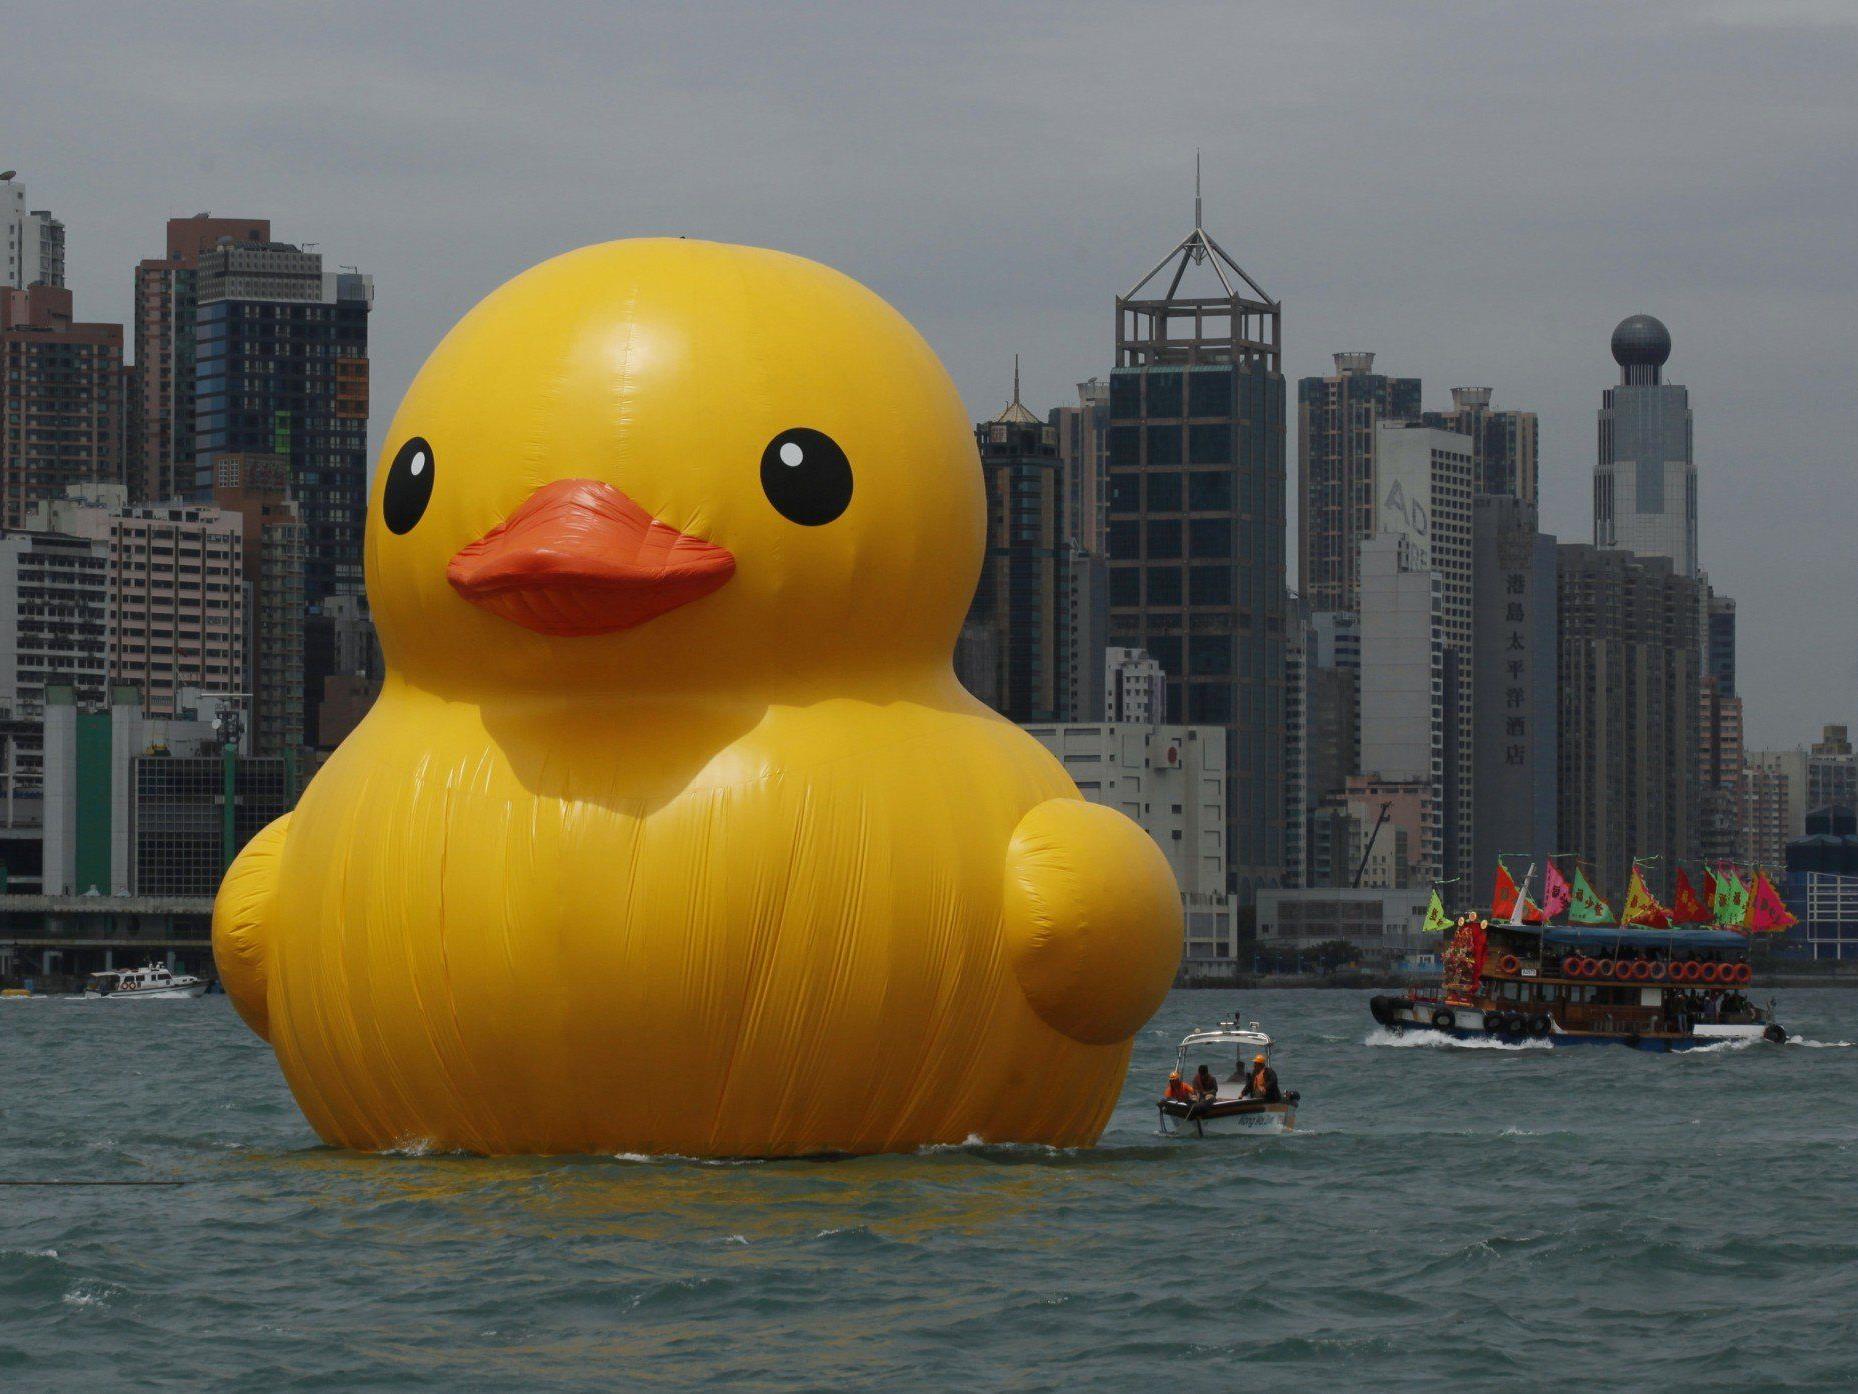 Die gigantische Gummi-Ente im Hafen von Hongkong.